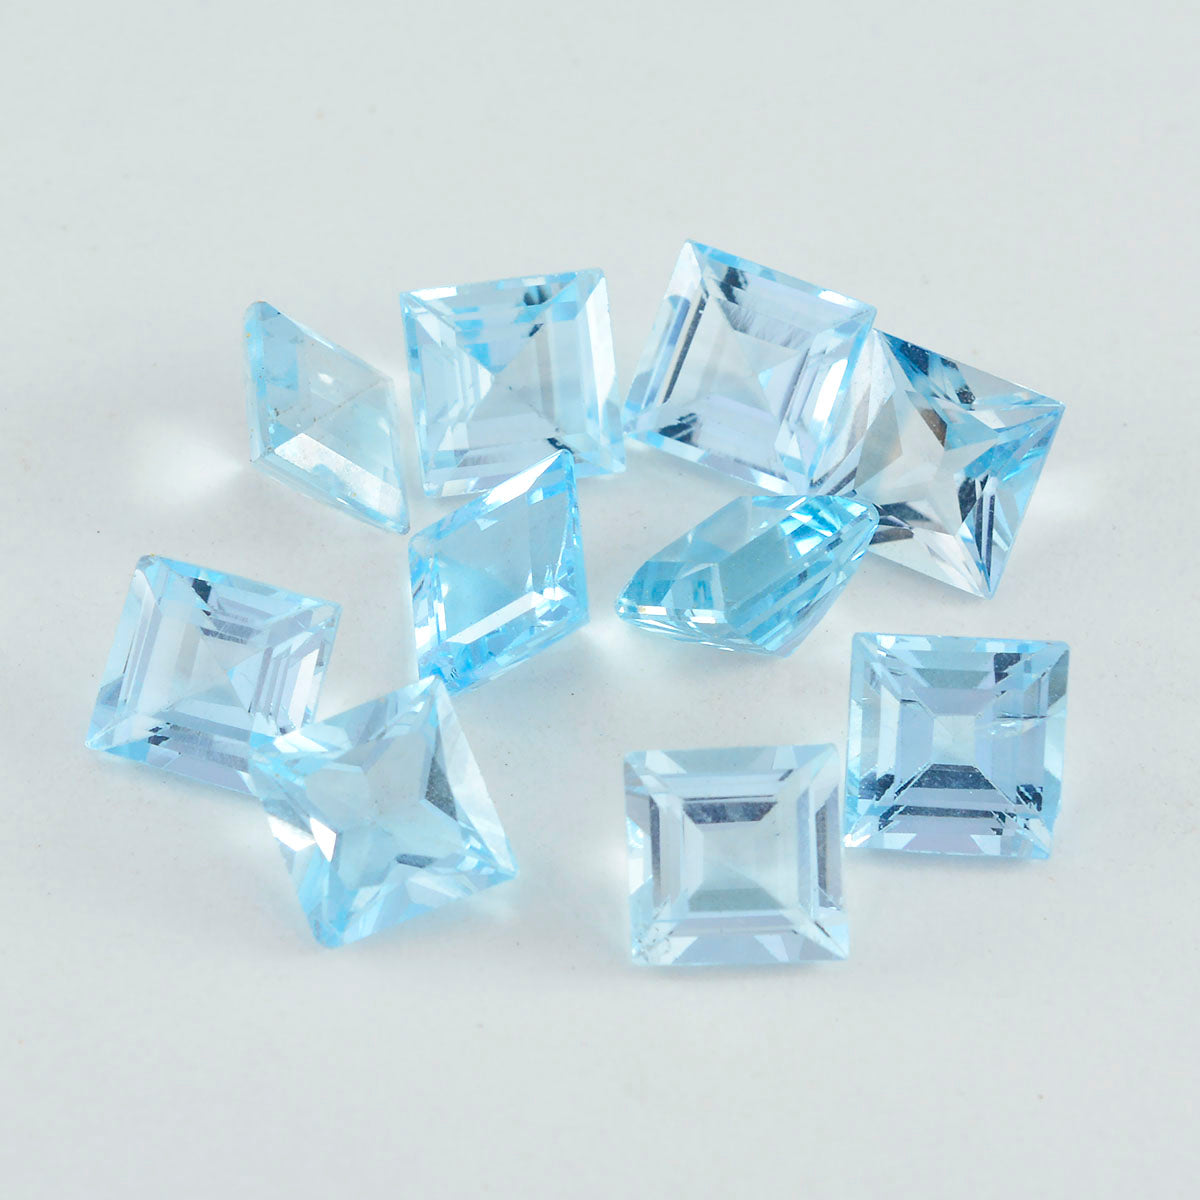 Riyogems 1 Stück echter blauer Topas, facettiert, 7 x 7 mm, quadratische Form, wunderschöner Qualitäts-Edelstein